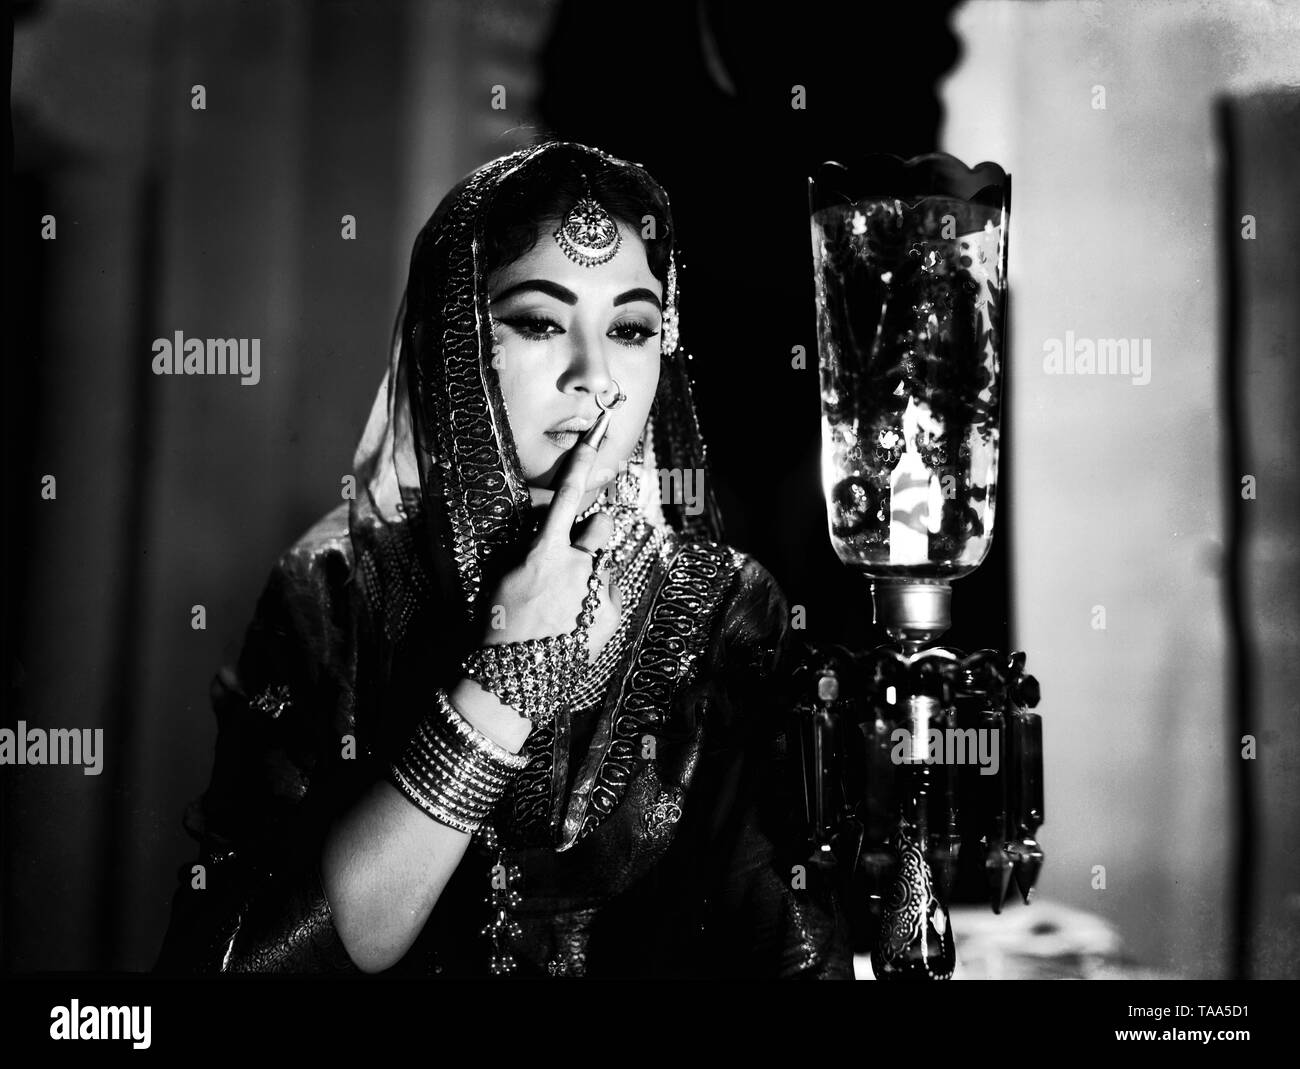 Meena kumari hi-res stock photography and images - Alamy